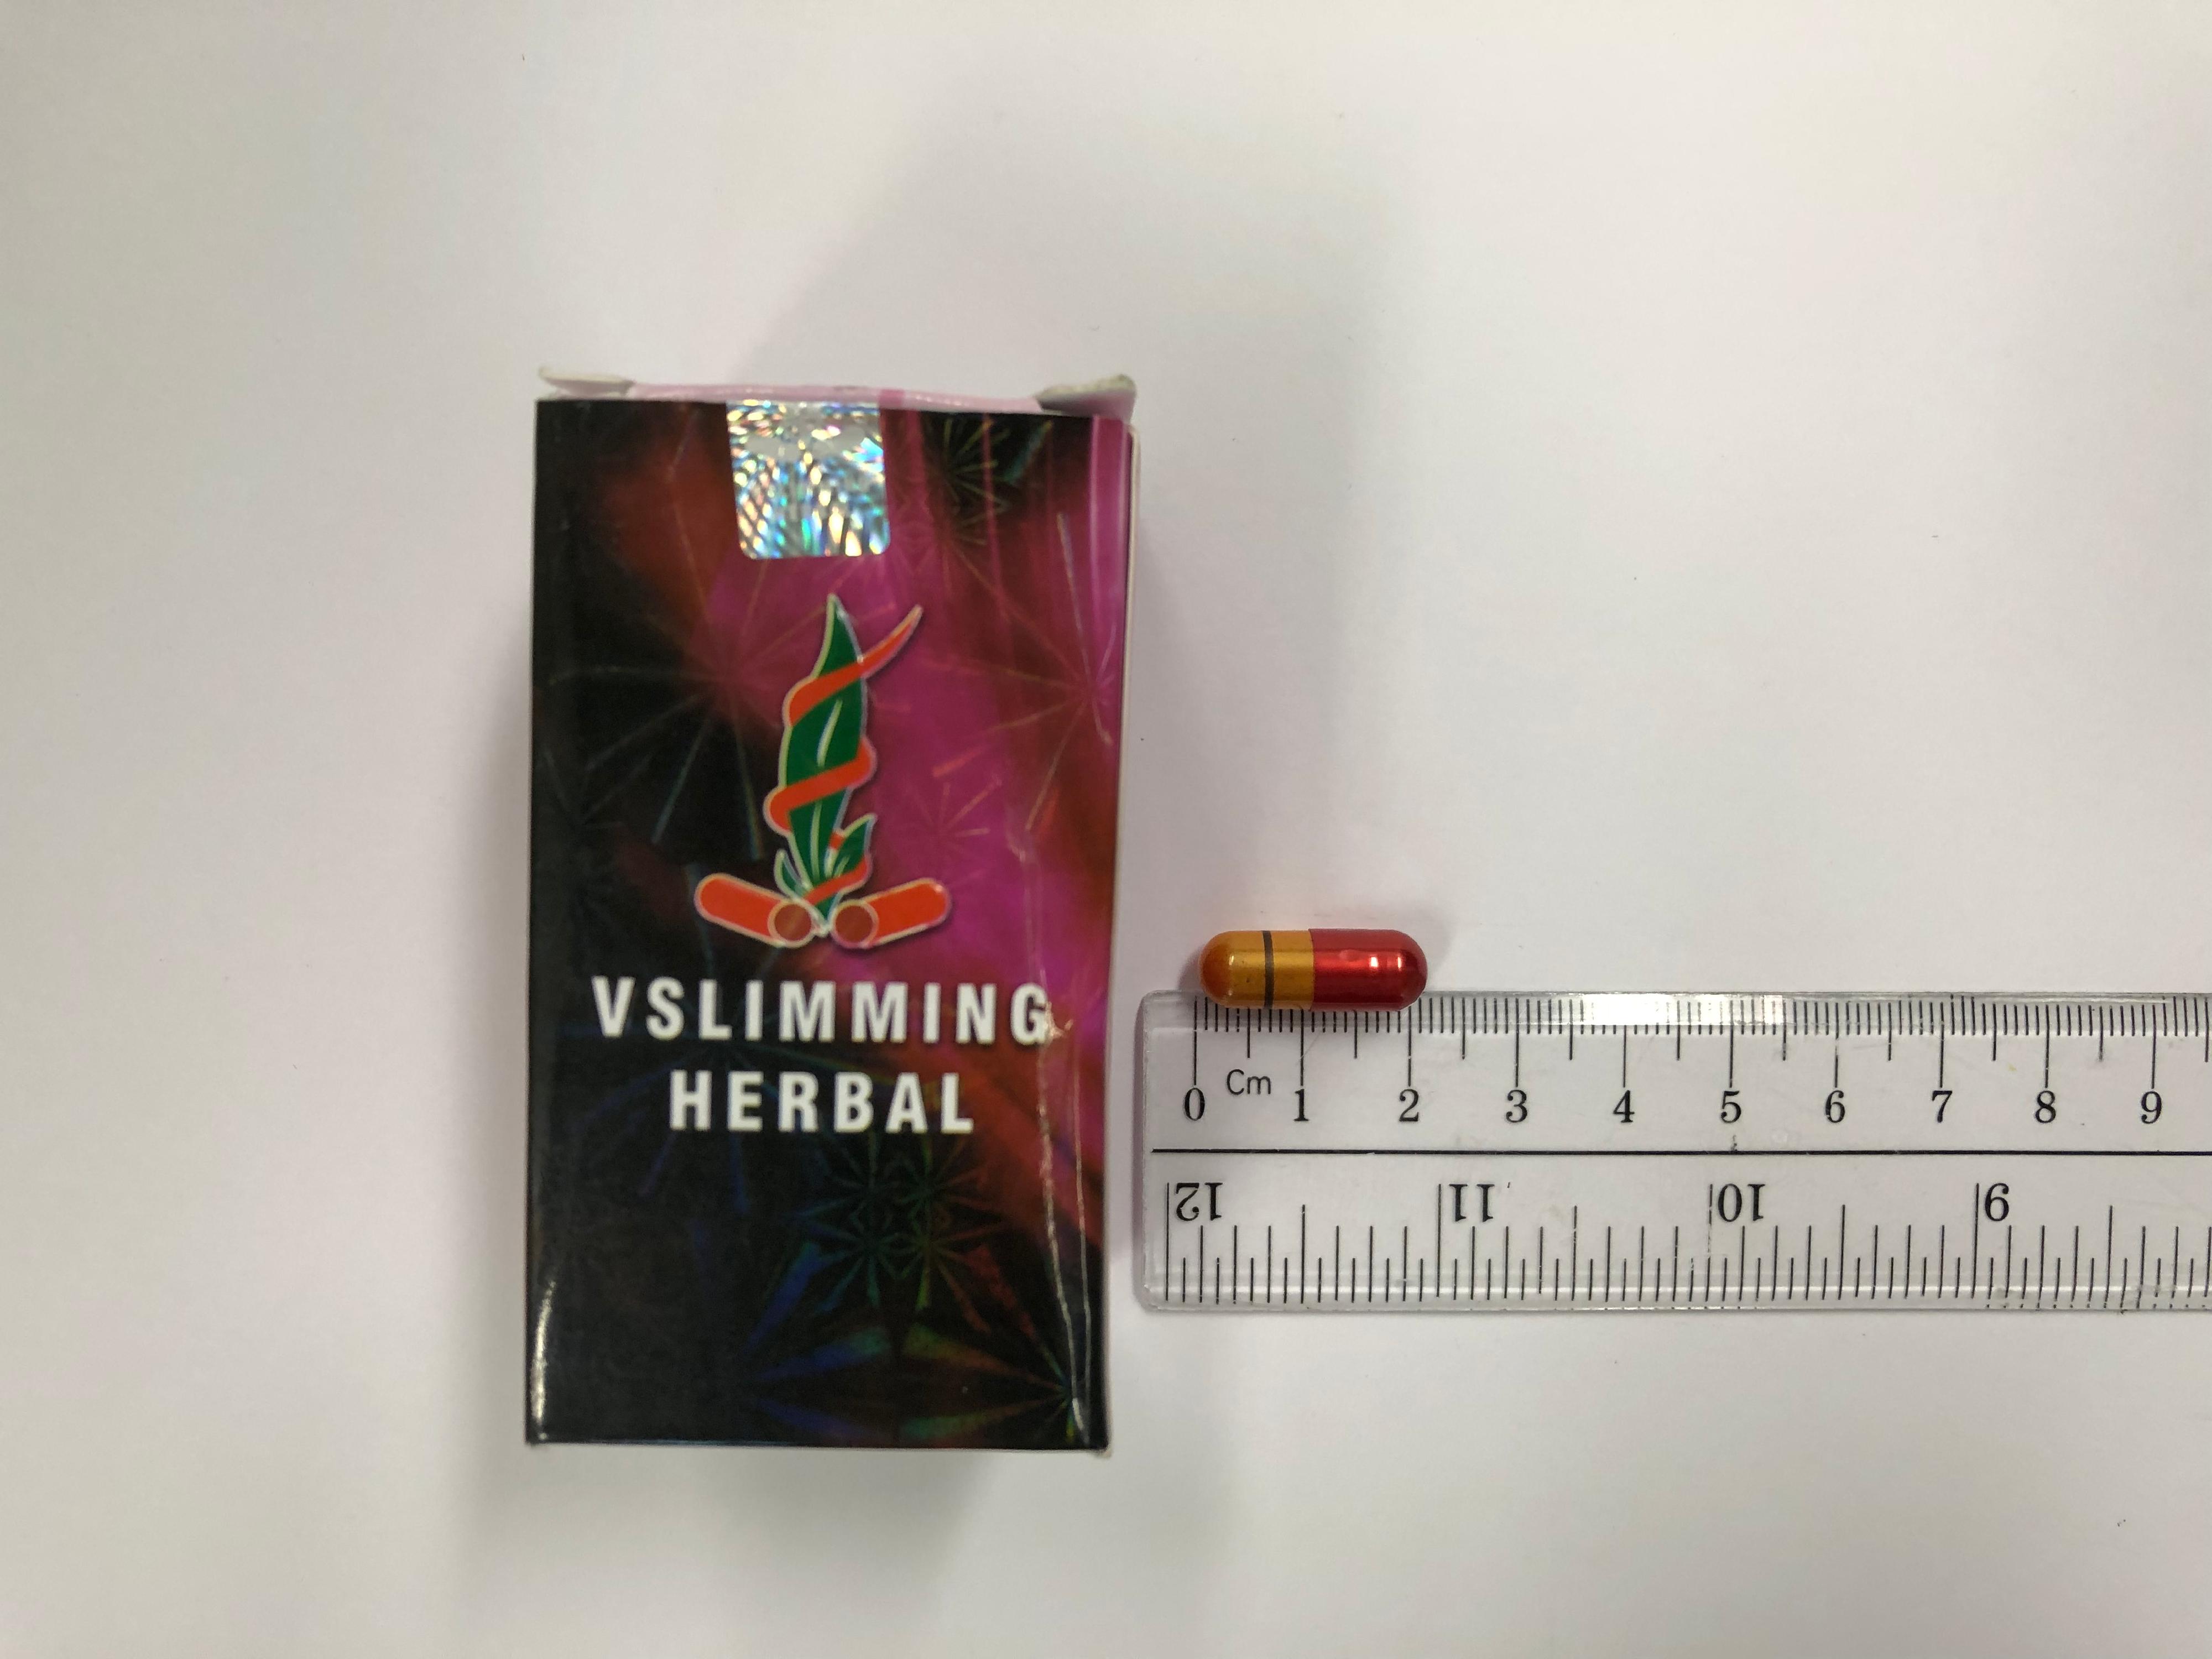 卫生署今日（九月二十二日）就销售一款名为「VSlimming Herbal」的减肥产品采取行动，该产品被发现含有未标示受管制药物成分，包括已禁用的西药成分。行动中，一名36岁男子涉嫌非法售卖及管有第1部毒药及未经注册药剂制品被警方拘捕。图示该款瘦身产品。